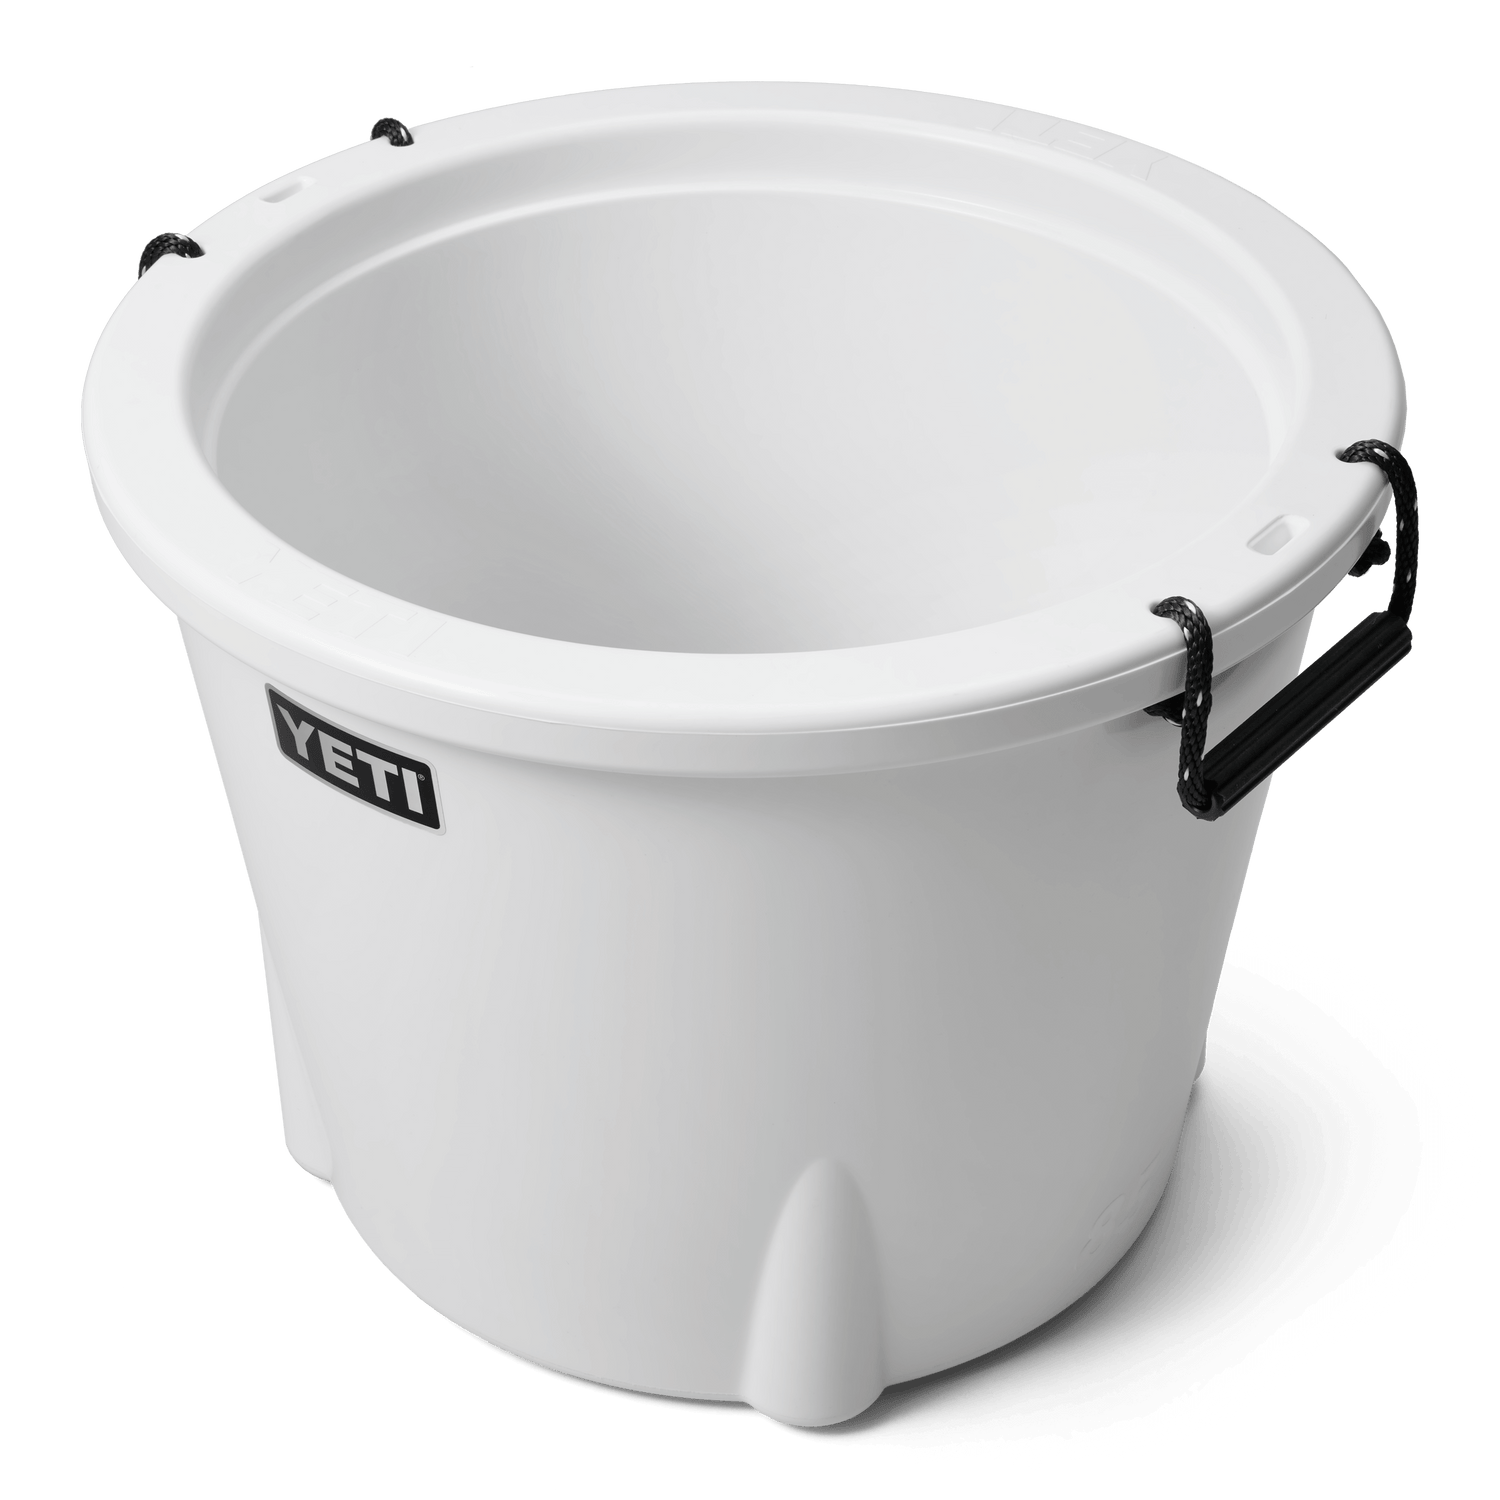 YETI YETI Tank® 85 Insulated Ice Bucket White